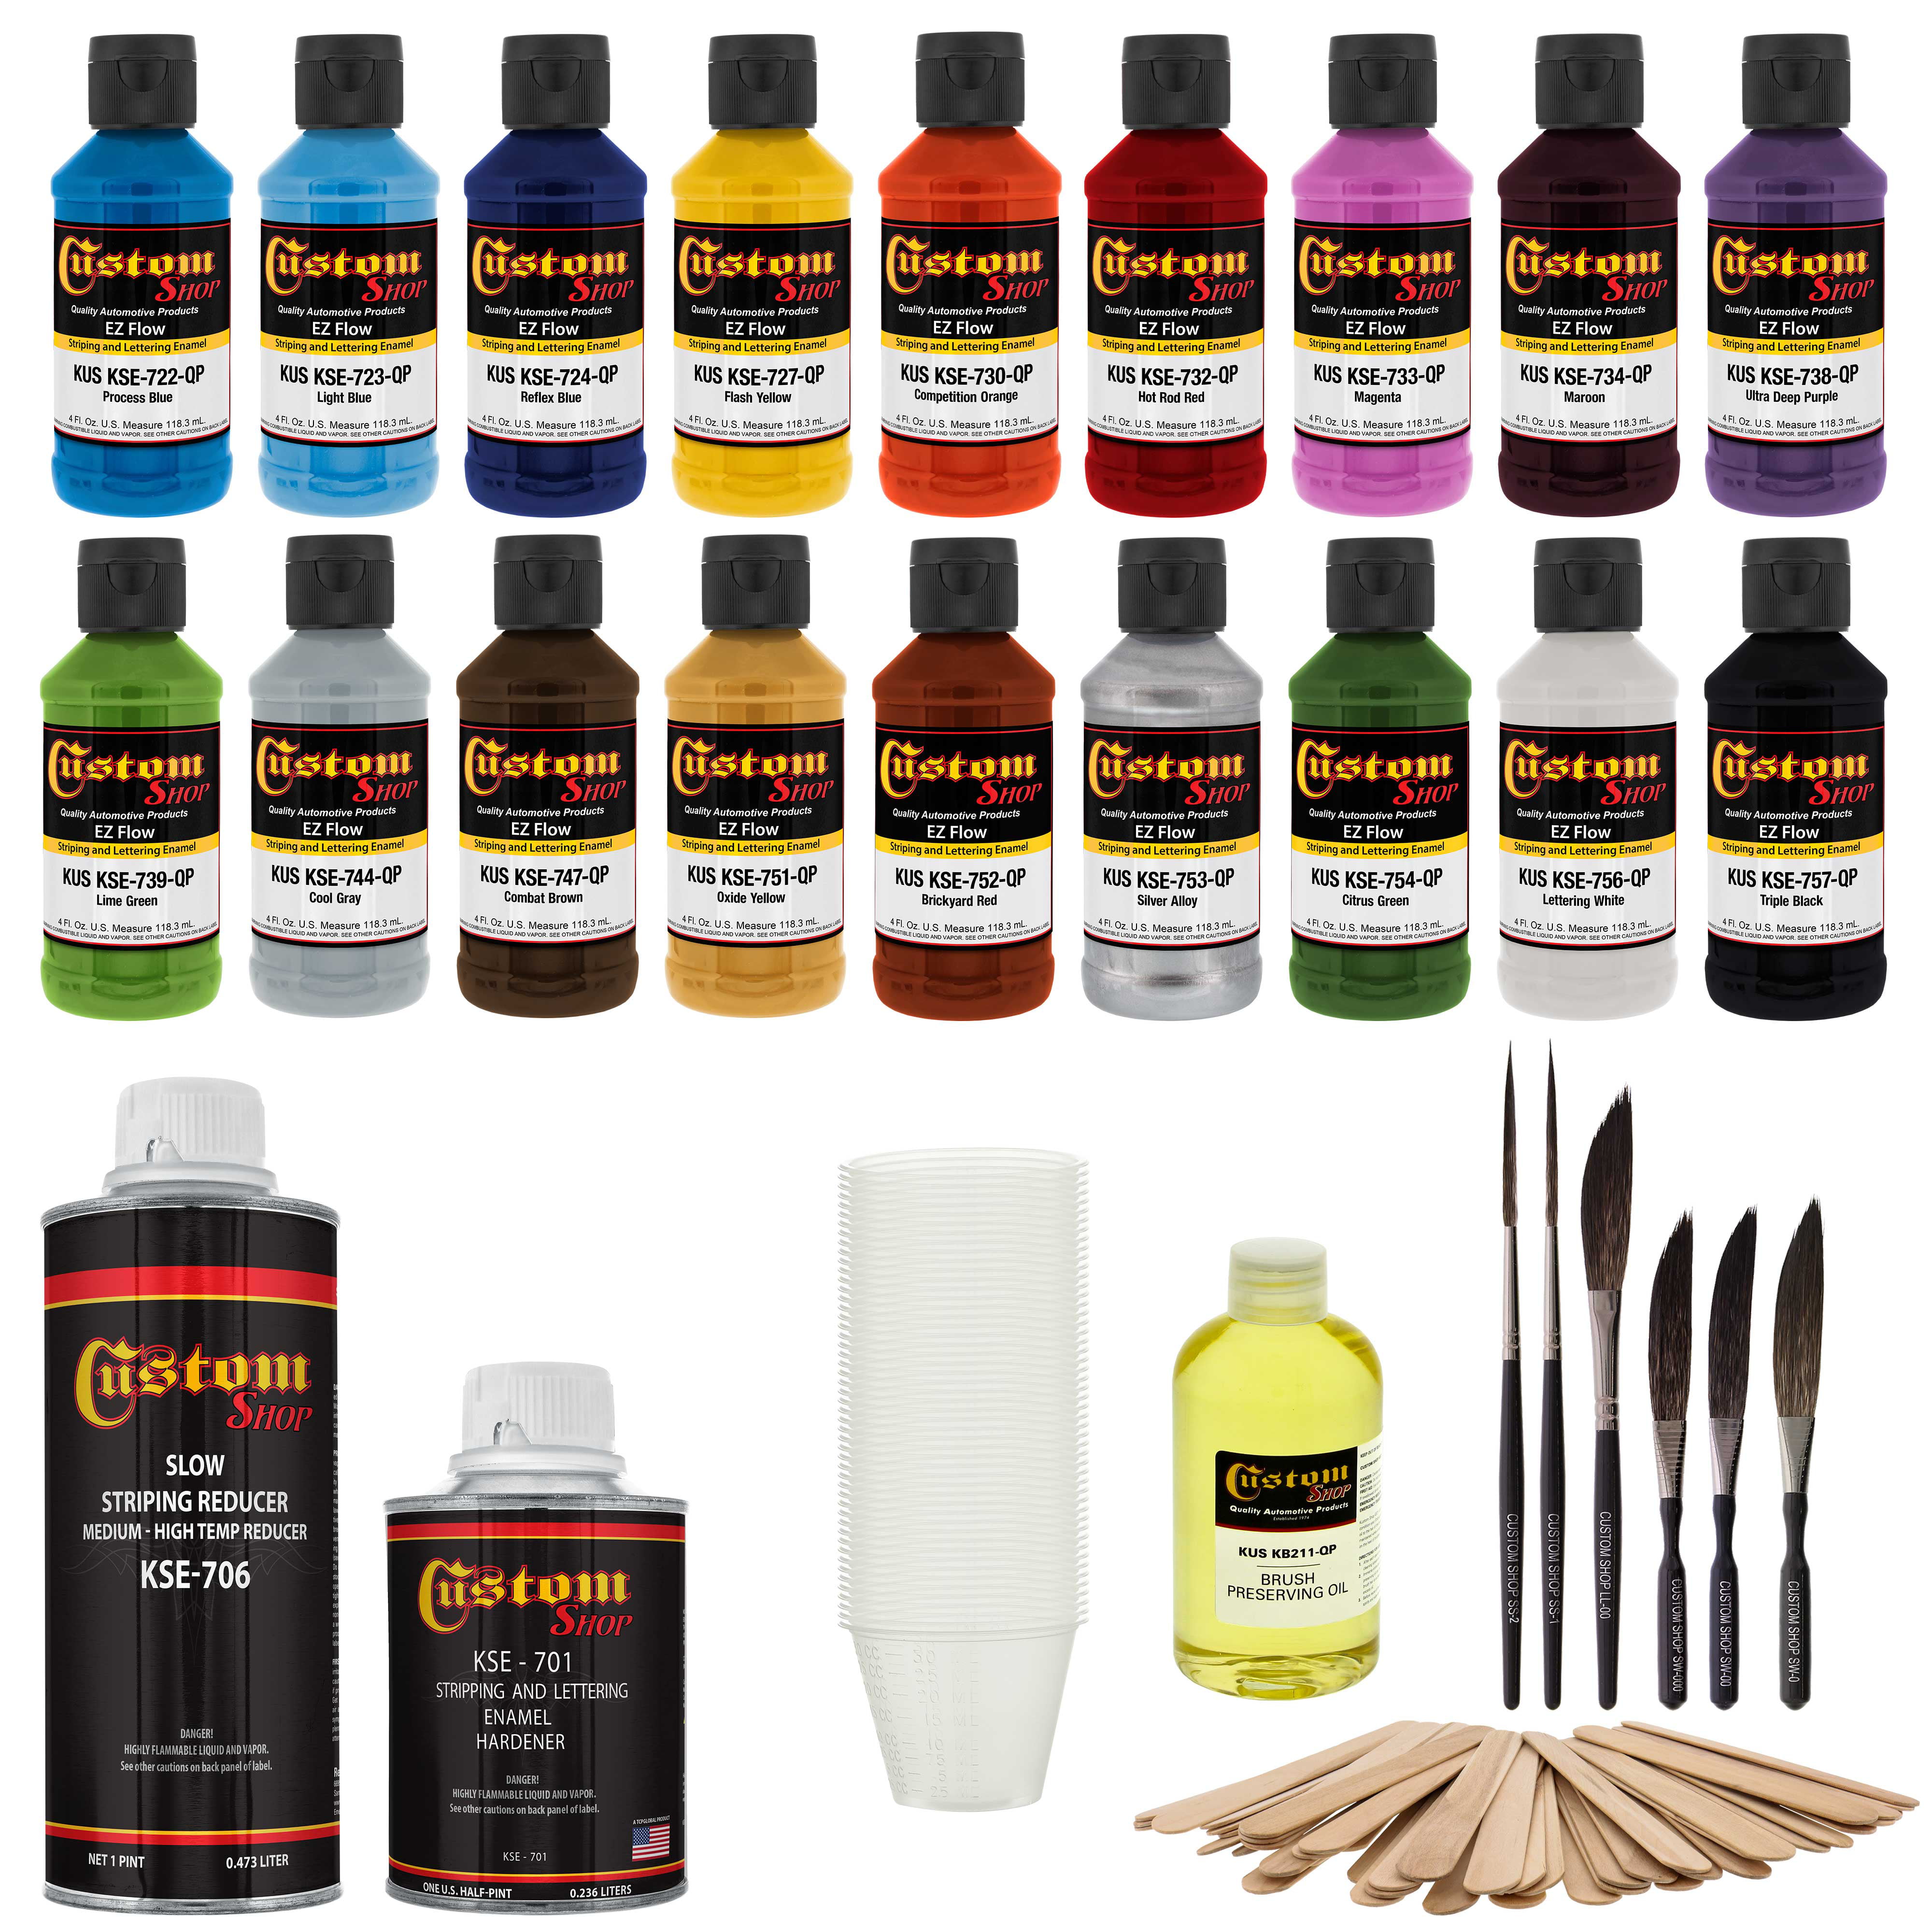 Custom Shop Starter Pinstriping Brush Kit and Brush Preserving Oil